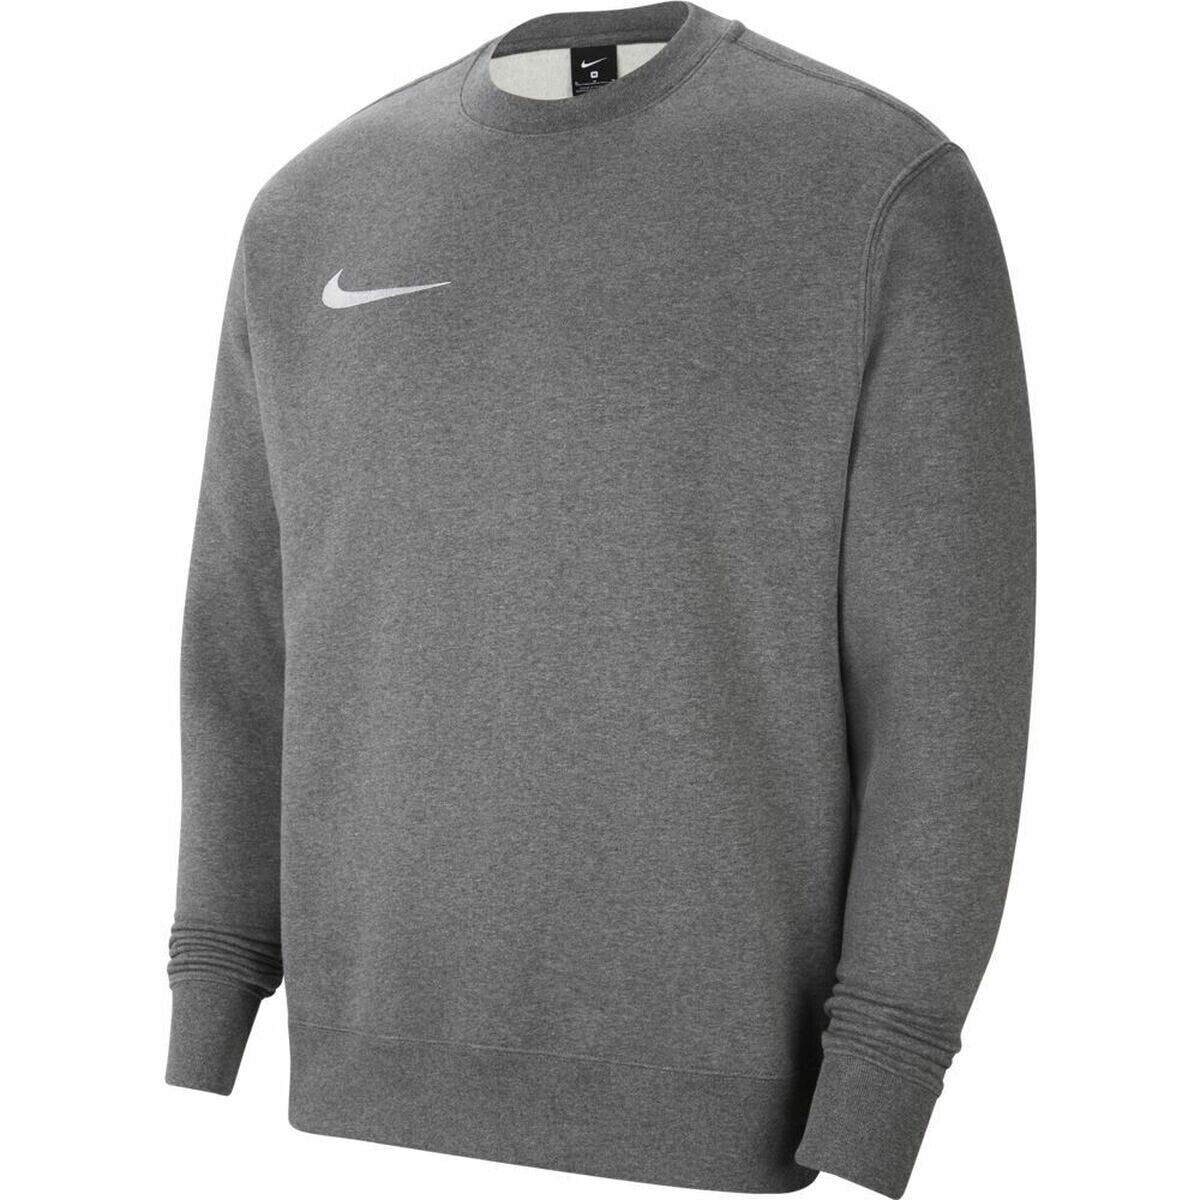 Children’s Sweatshirt PARK 20 FLEECE CREW Nike CW6904 071 Grey